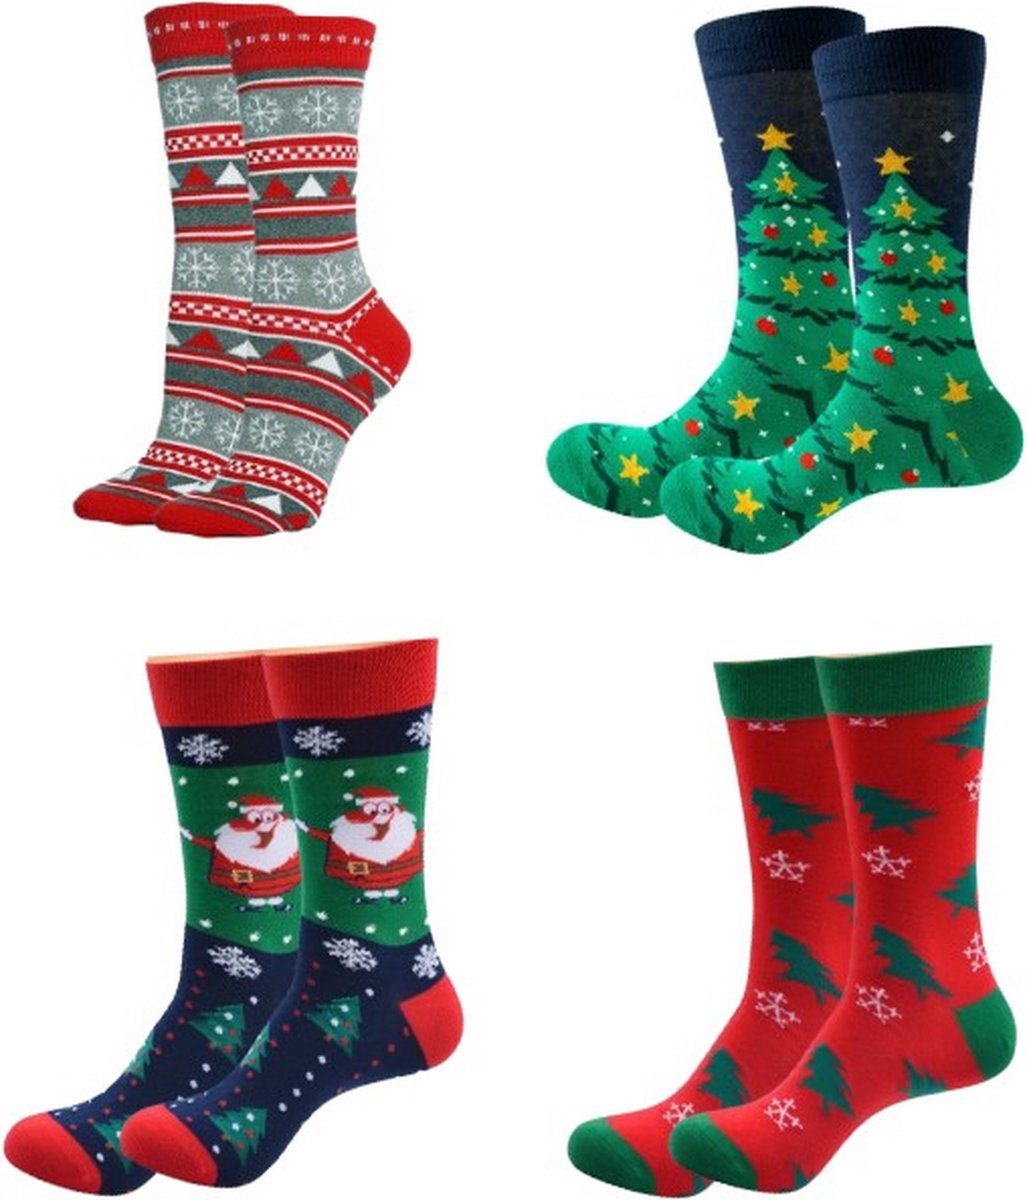 ASTRADAVI Christmas Socks - Sokken - 4 Paar Kerstsokken - Premium Katoenen Normale Sokken - 40/46 - Rood, Zwart, Groen, Marineblauw, Wit - Kerstcadeau Idee